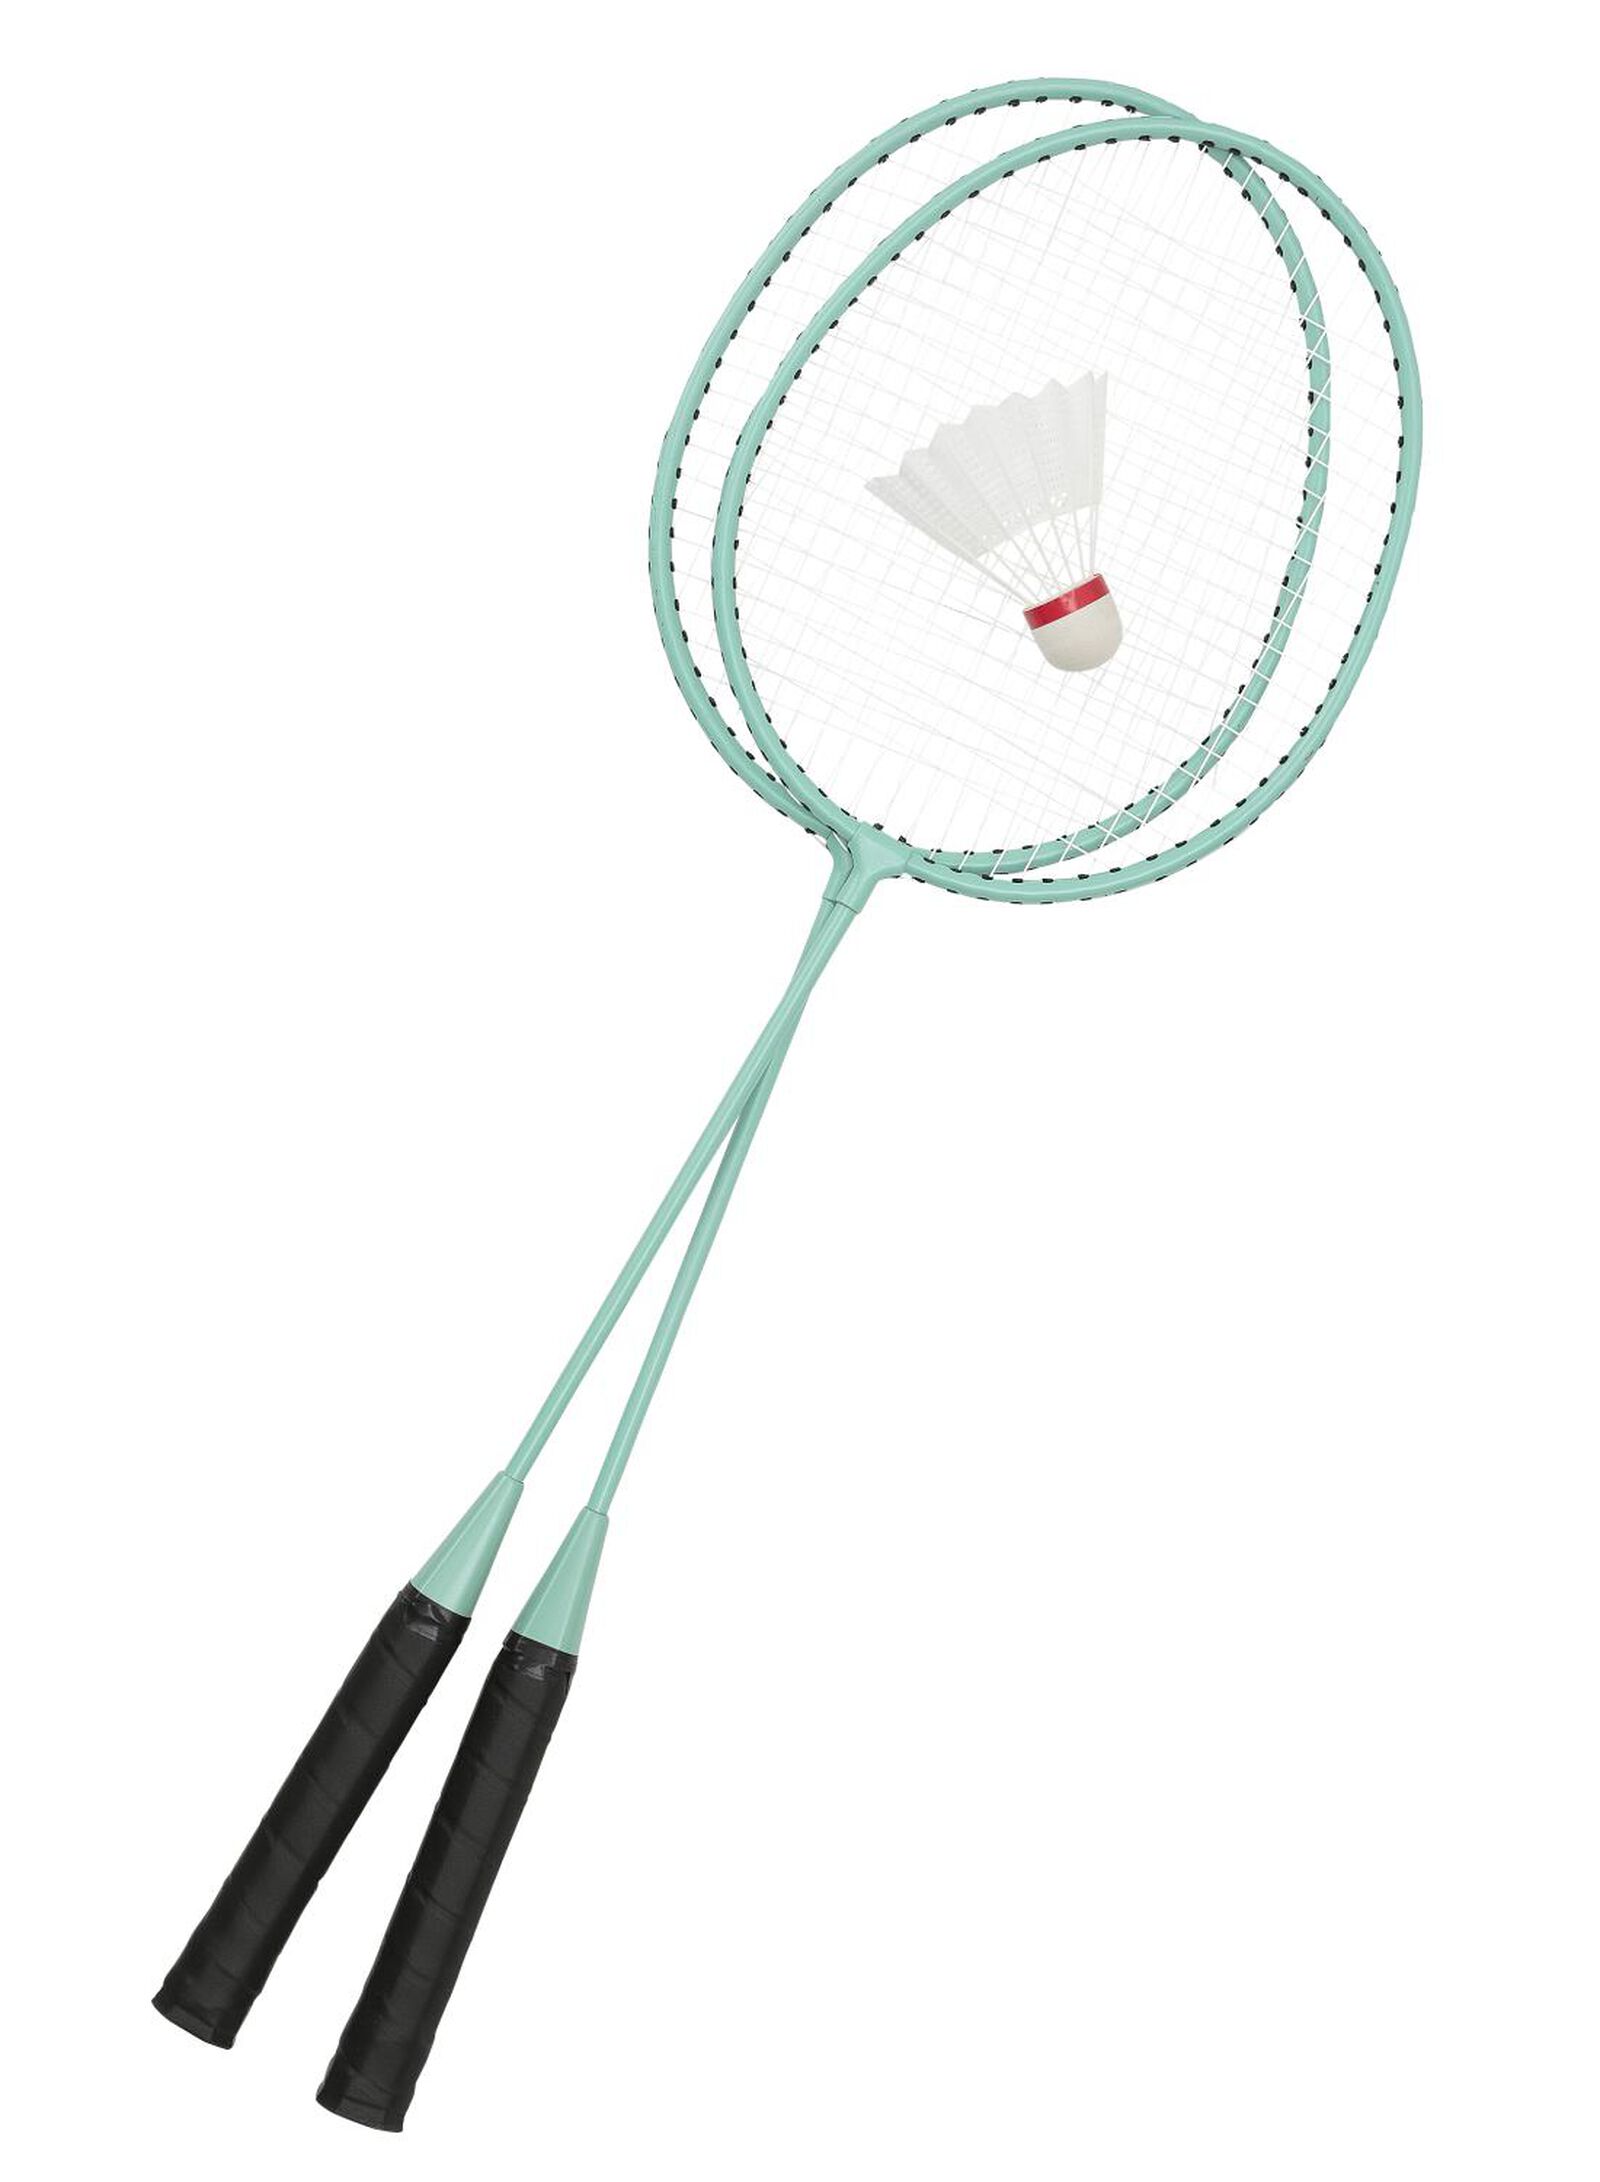 jeu de badminton enfant - HEMA